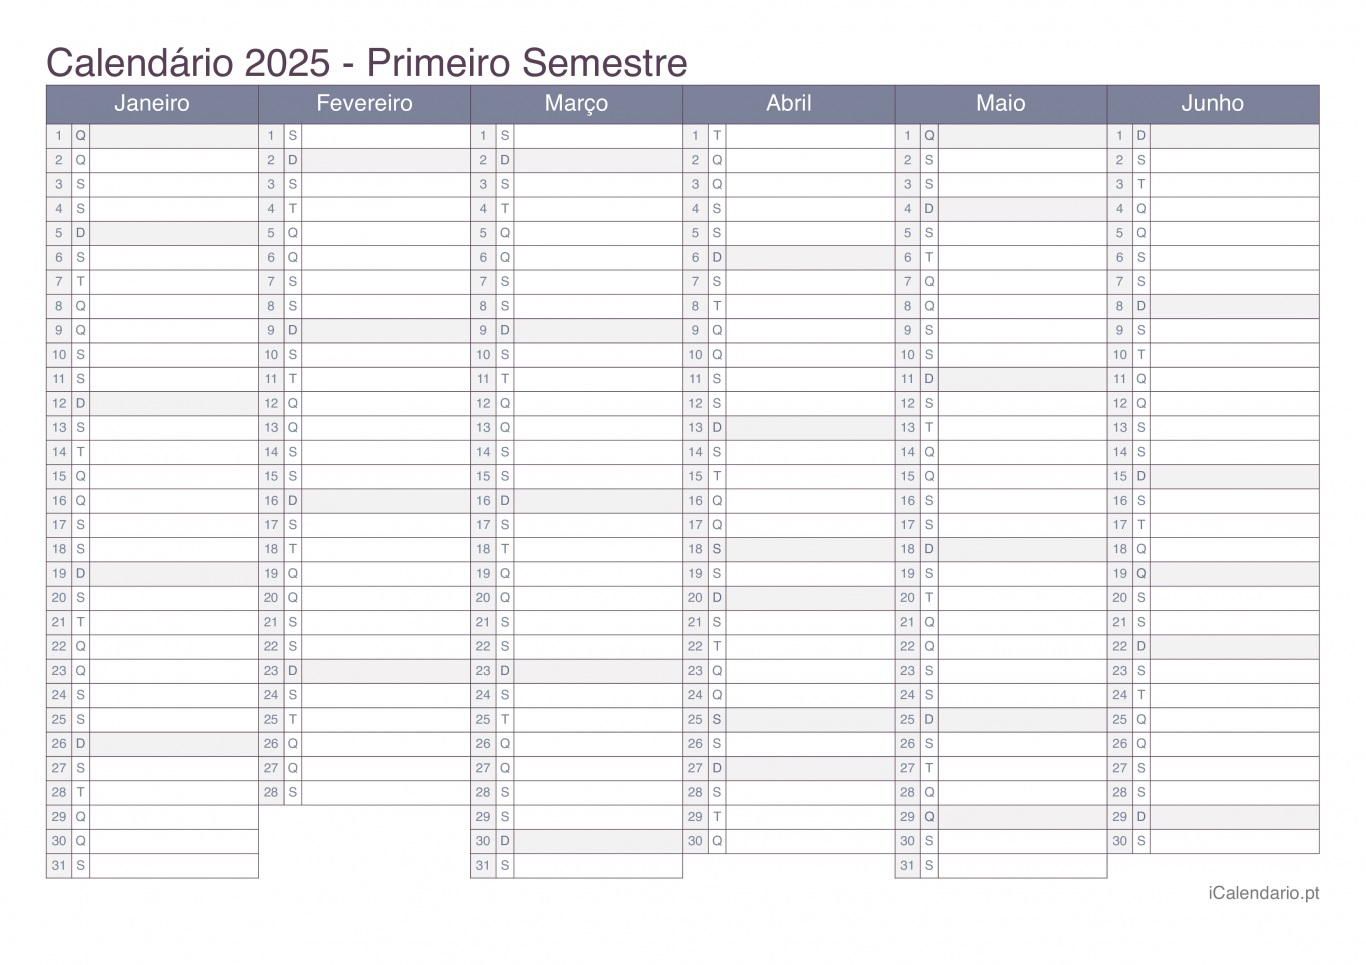 Calendário por semestre 2025 - Office